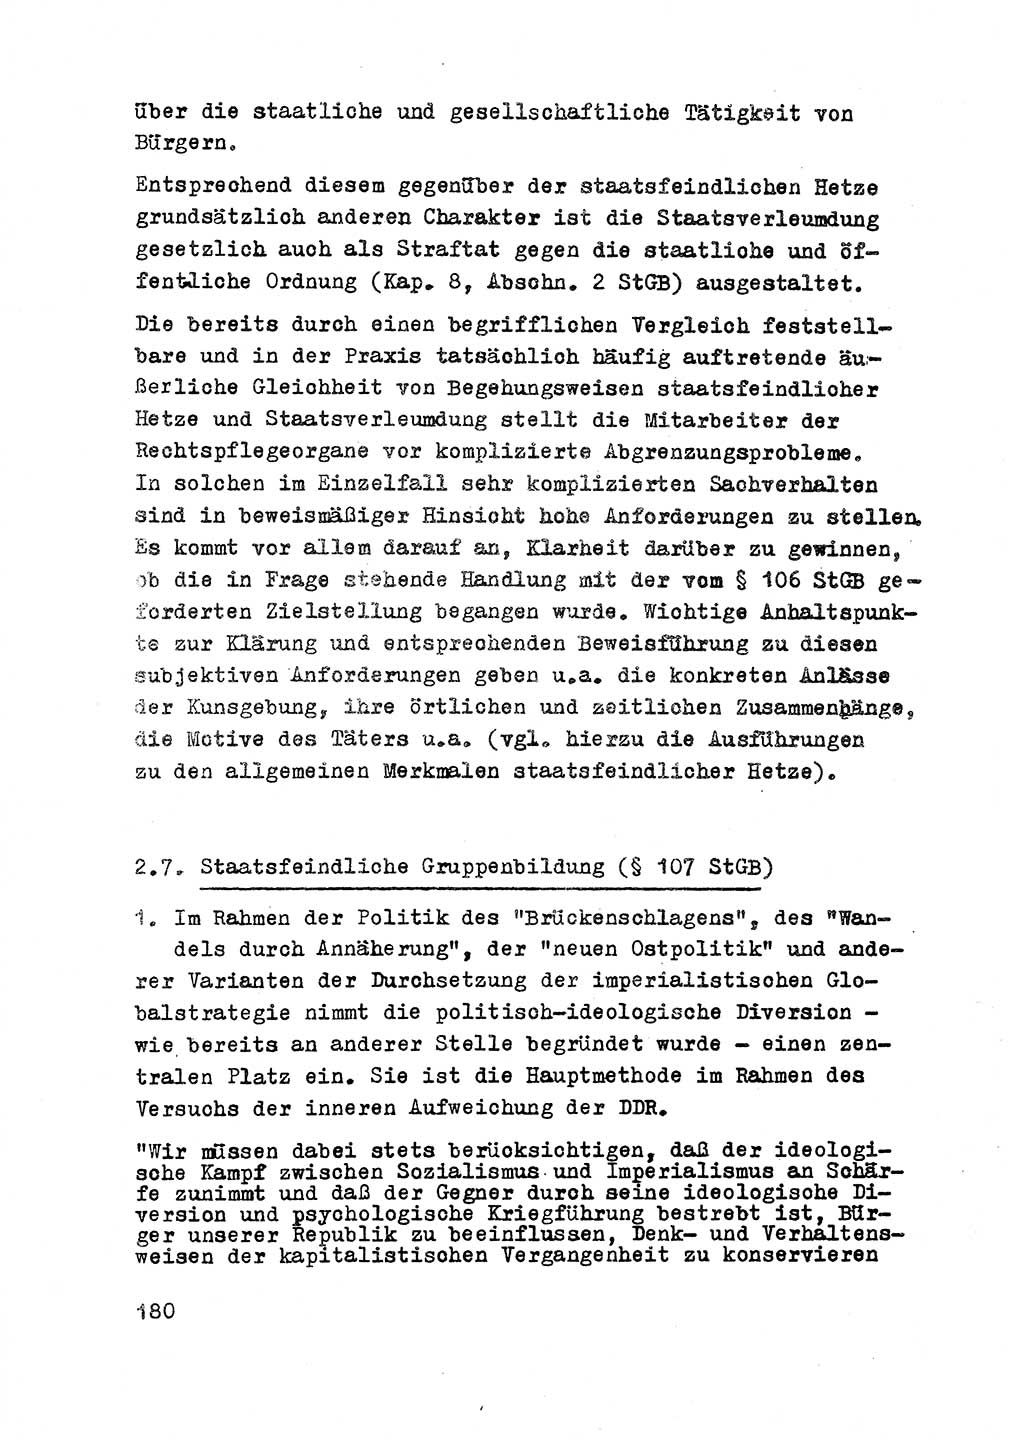 Strafrecht der DDR (Deutsche Demokratische Republik), Besonderer Teil, Lehrmaterial, Heft 2 1969, Seite 180 (Strafr. DDR BT Lehrmat. H. 2 1969, S. 180)